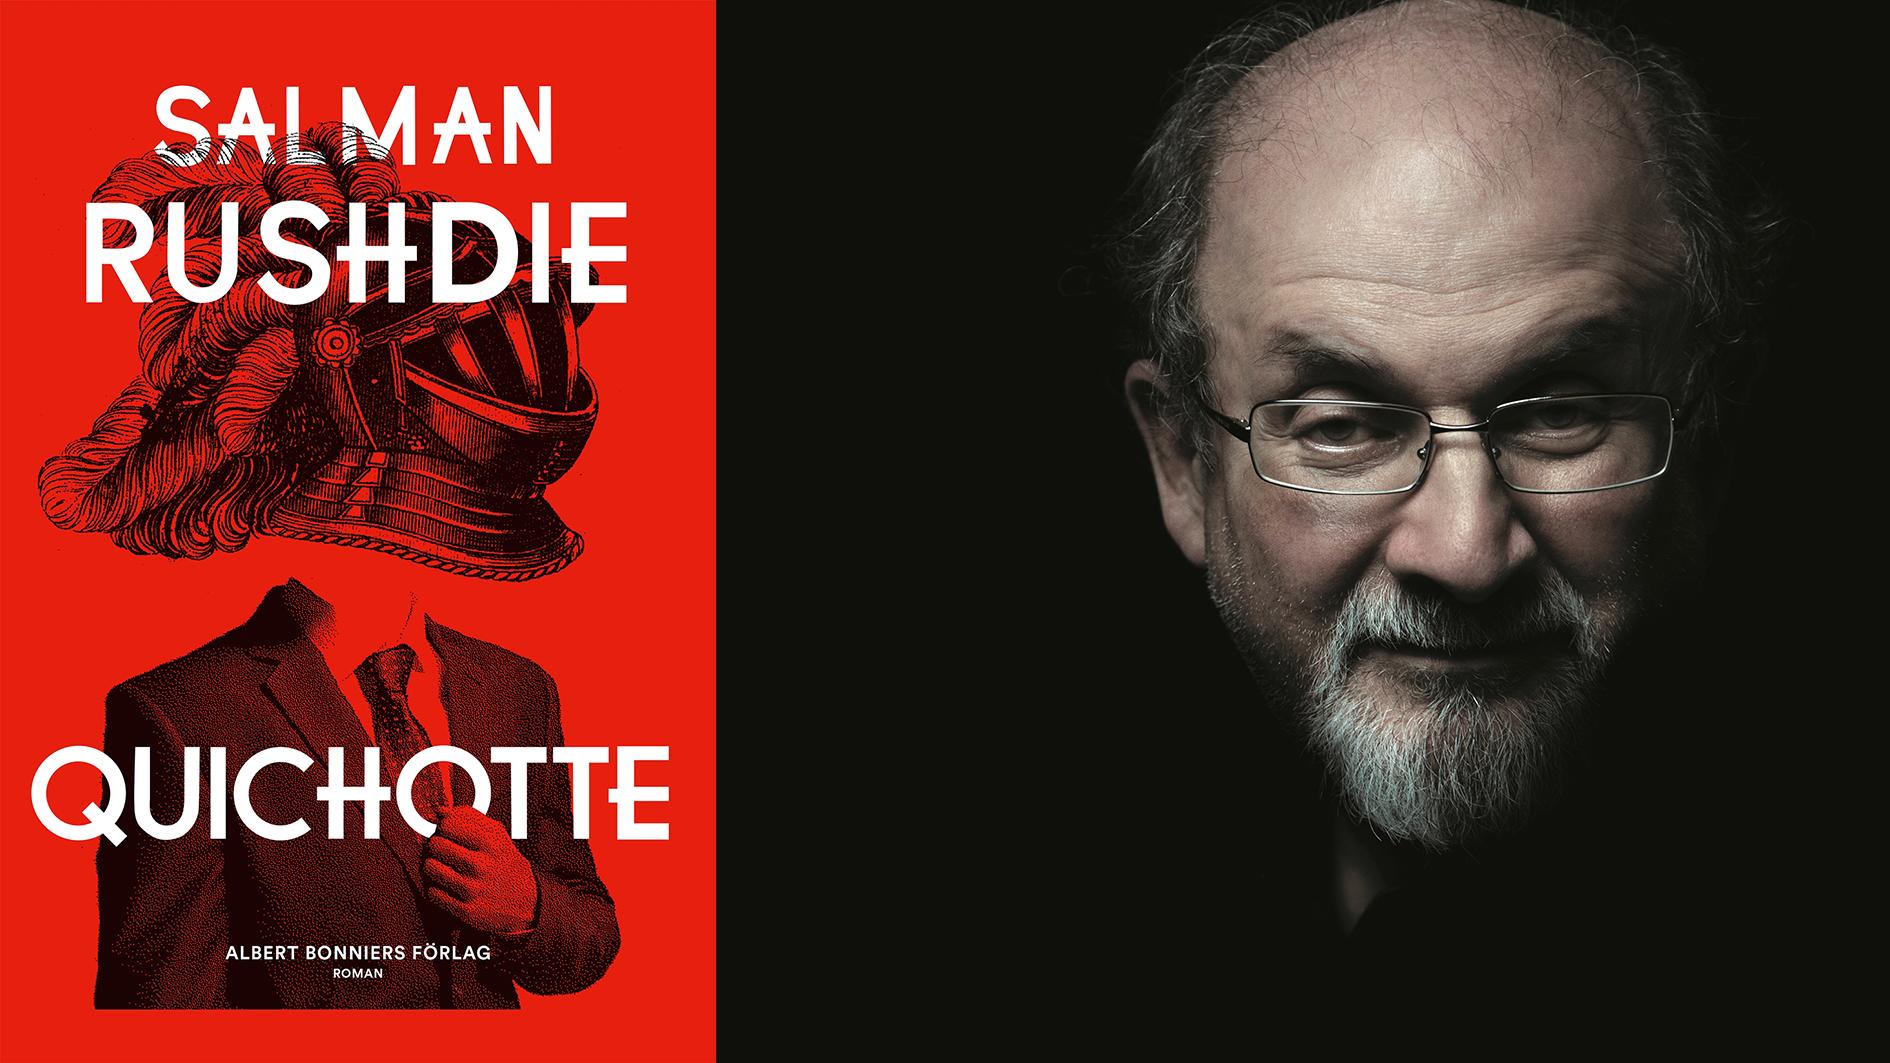 Salman Rushdie (född 1947) bor numera i USA och riktar i senaste romanen kängor mot många fenomen i det nya hemlandet som skräp-tv, rasism, Trump och fake news.